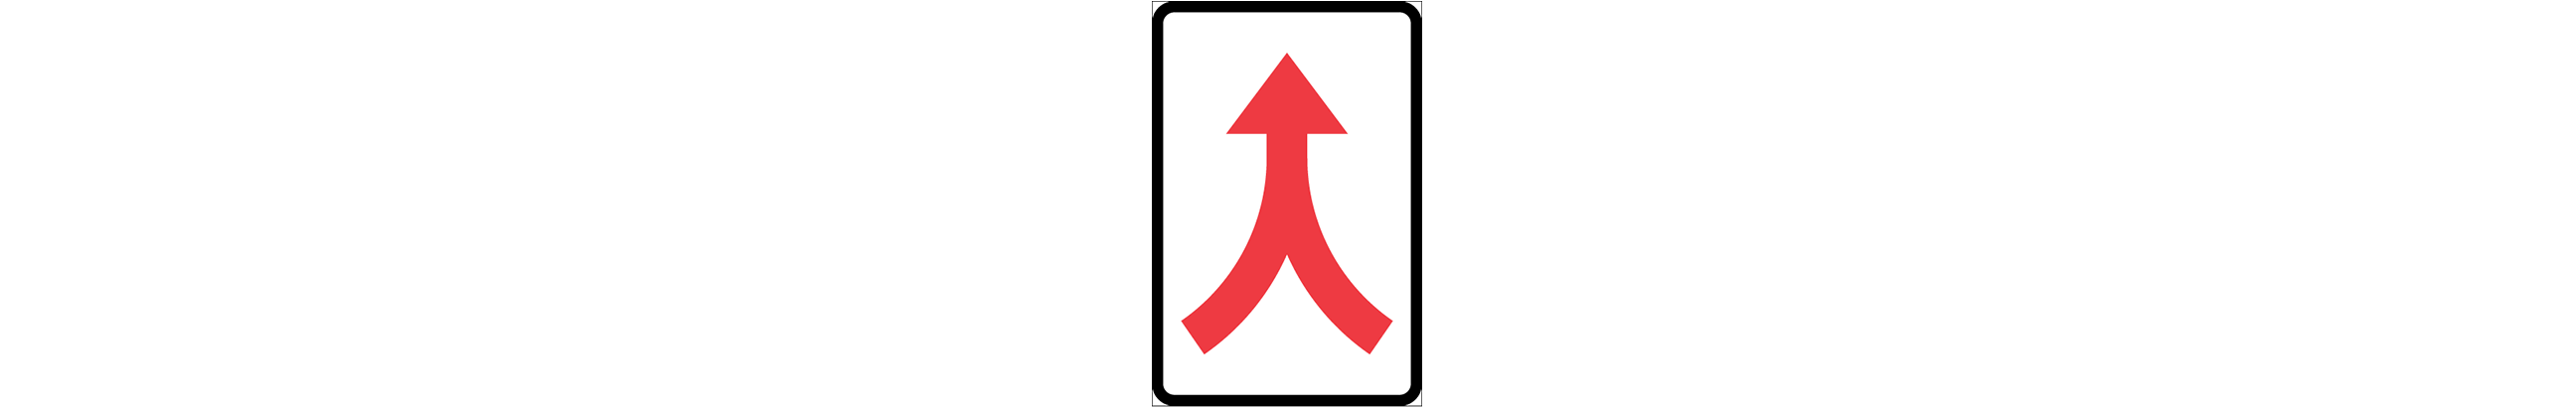 vägmärke för sammanvävning